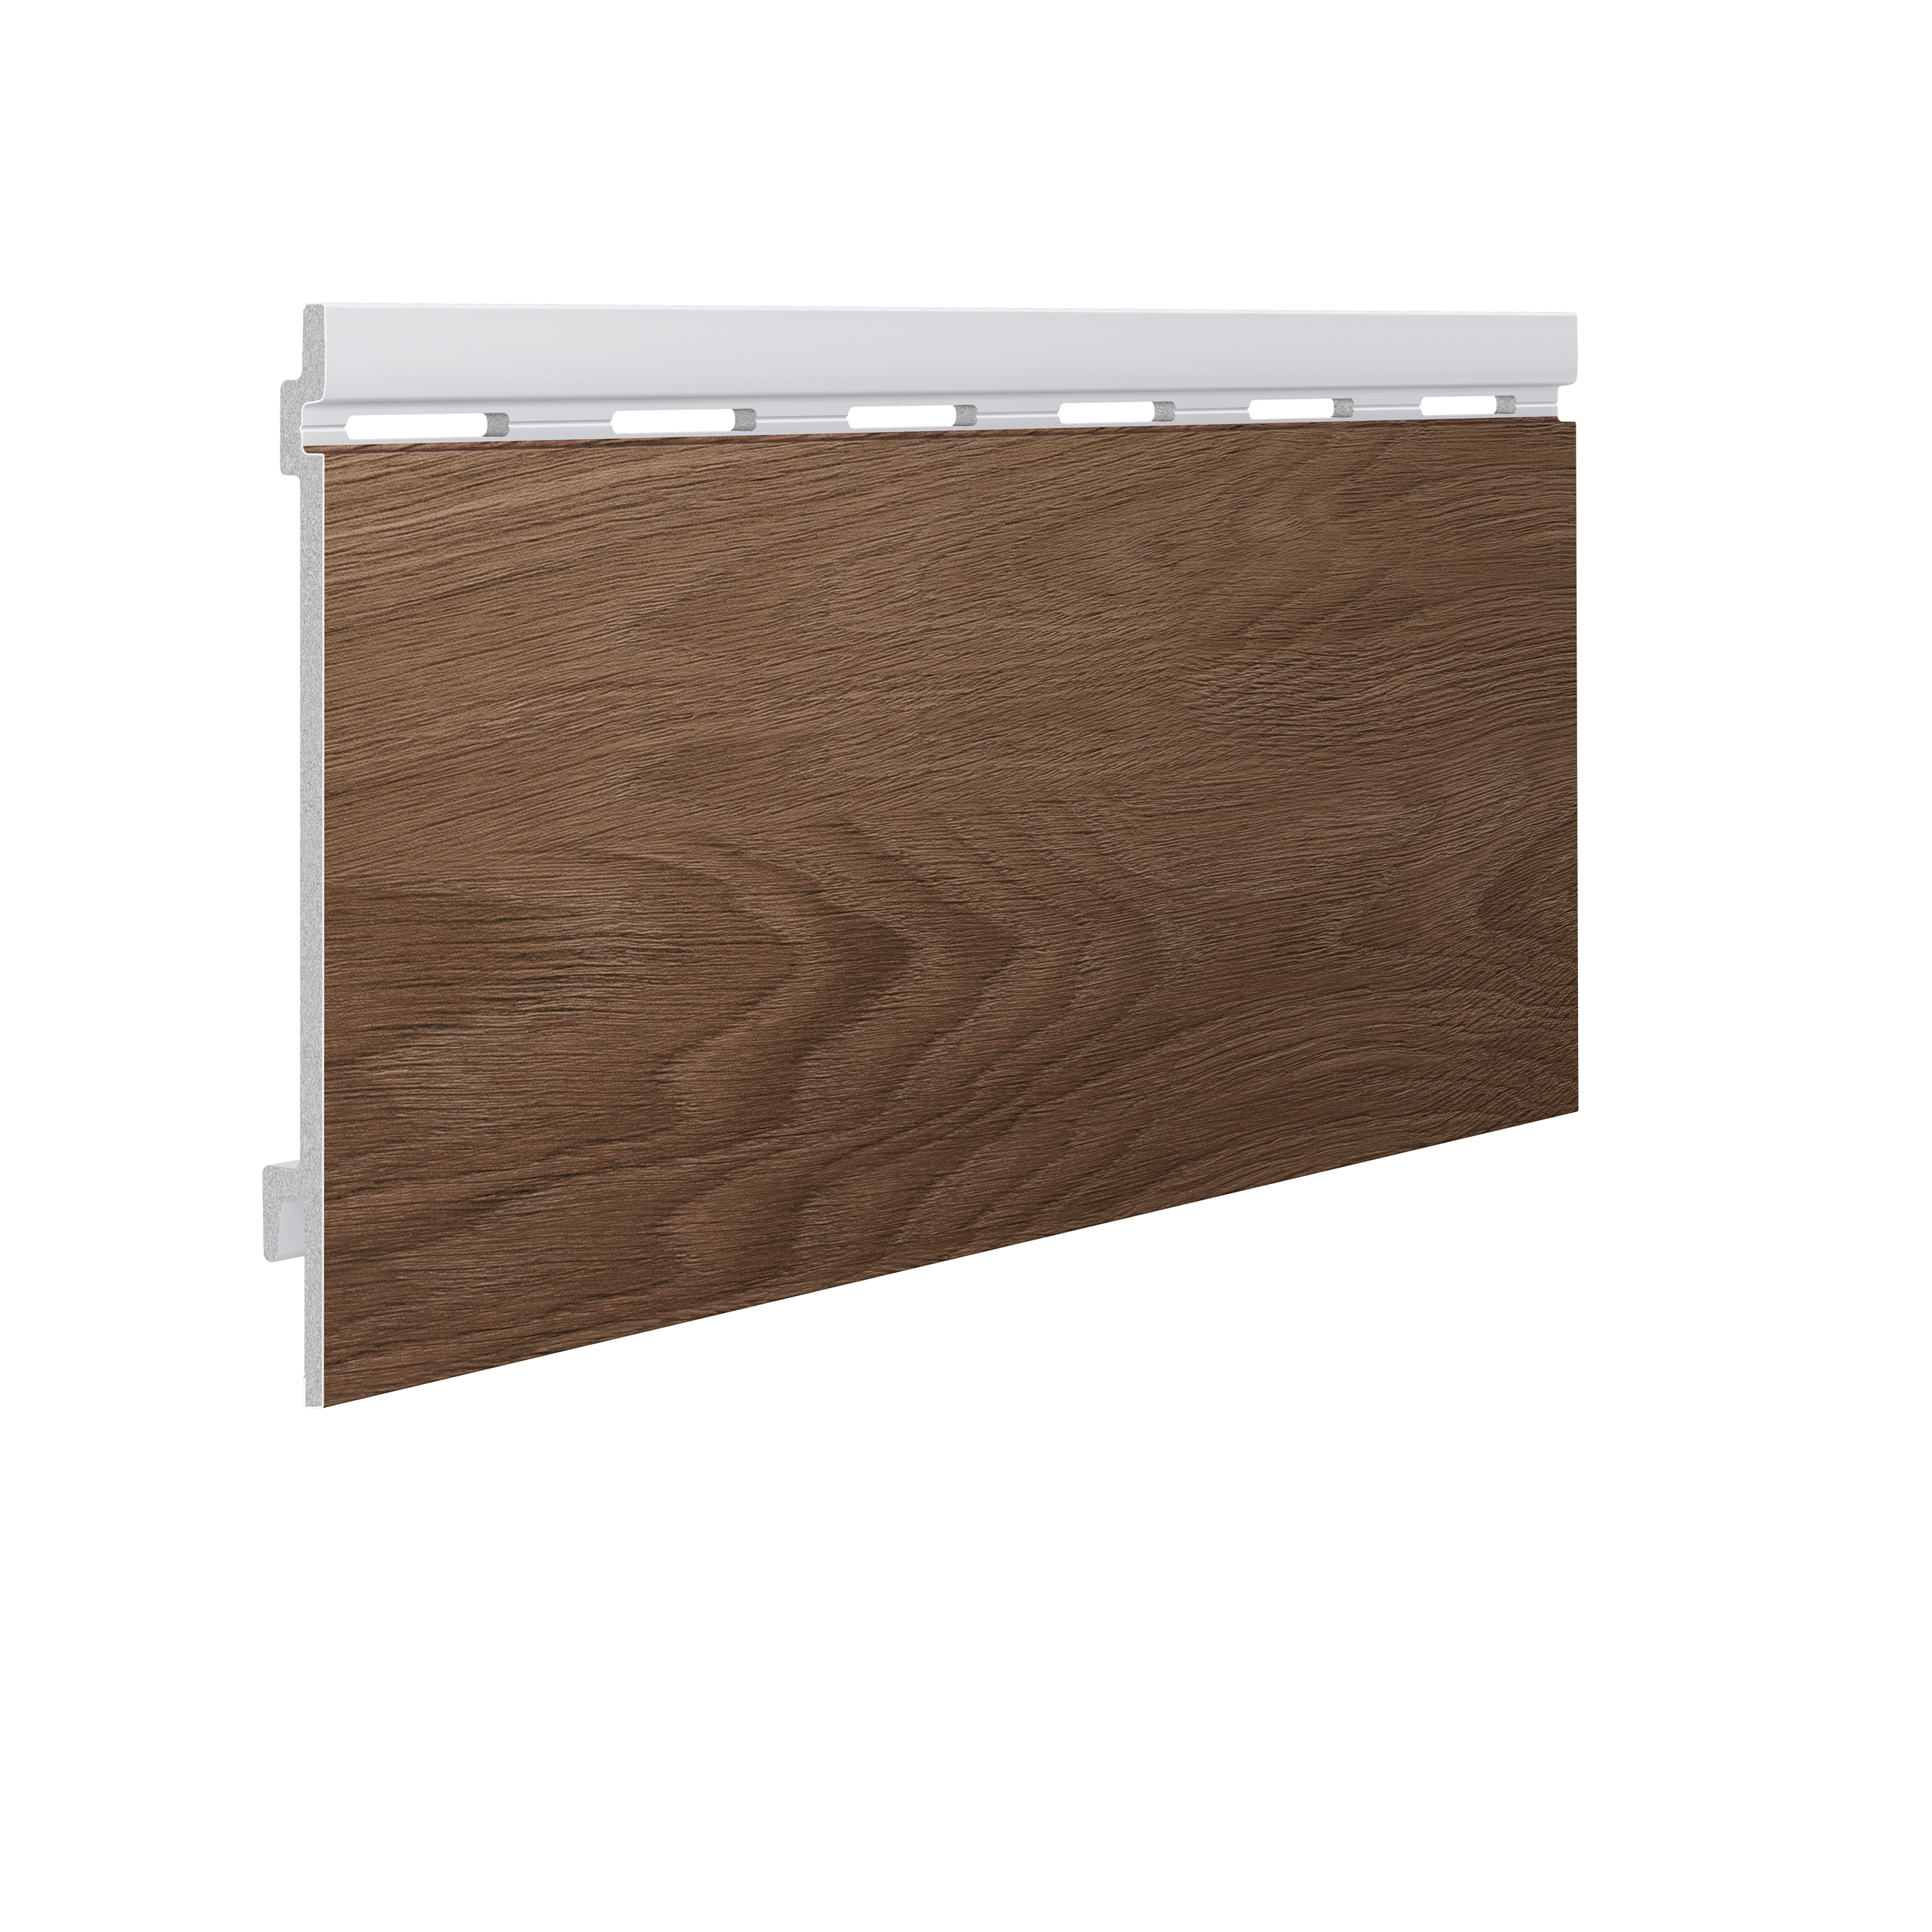 Okładzina elewacyjna Kerrafront, Wood Effect, Caramel Oak, deska pojedyncza